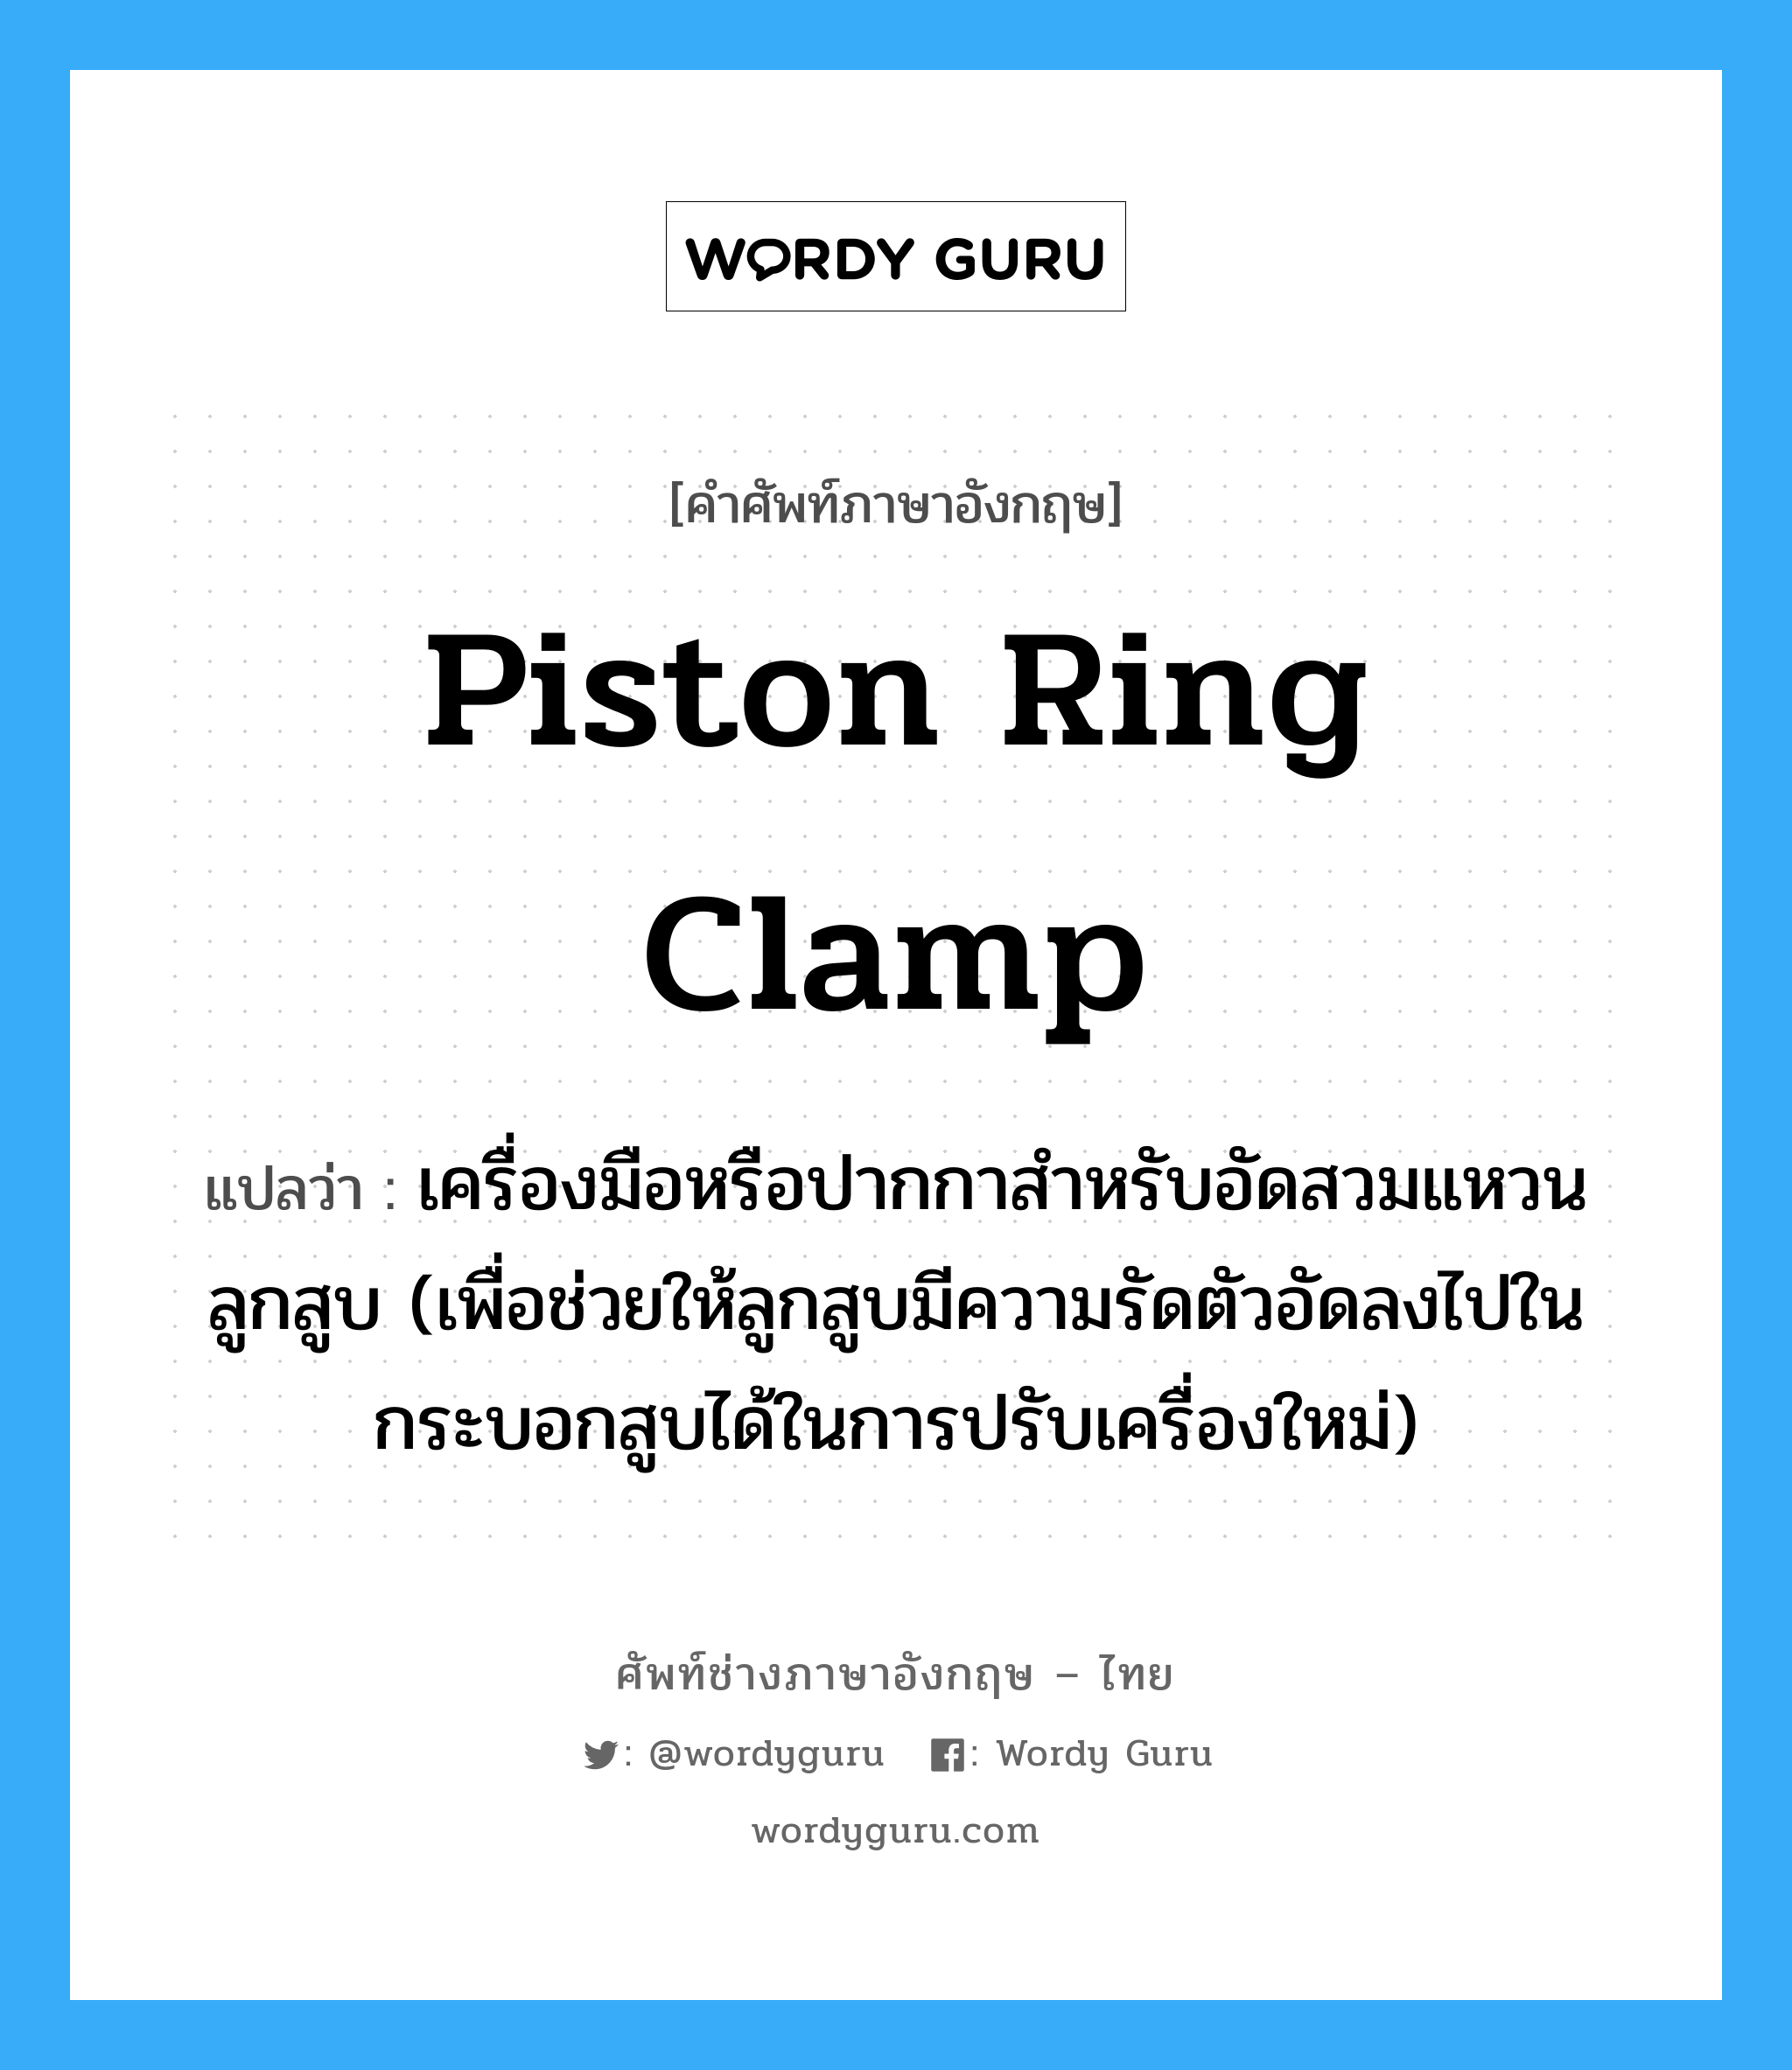 piston ring clamp แปลว่า?, คำศัพท์ช่างภาษาอังกฤษ - ไทย piston ring clamp คำศัพท์ภาษาอังกฤษ piston ring clamp แปลว่า เครื่องมือหรือปากกาสำหรับอัดสวมแหวนลูกสูบ (เพื่อช่วยให้ลูกสูบมีความรัดตัวอัดลงไปในกระบอกสูบได้ในการปรับเครื่องใหม่)